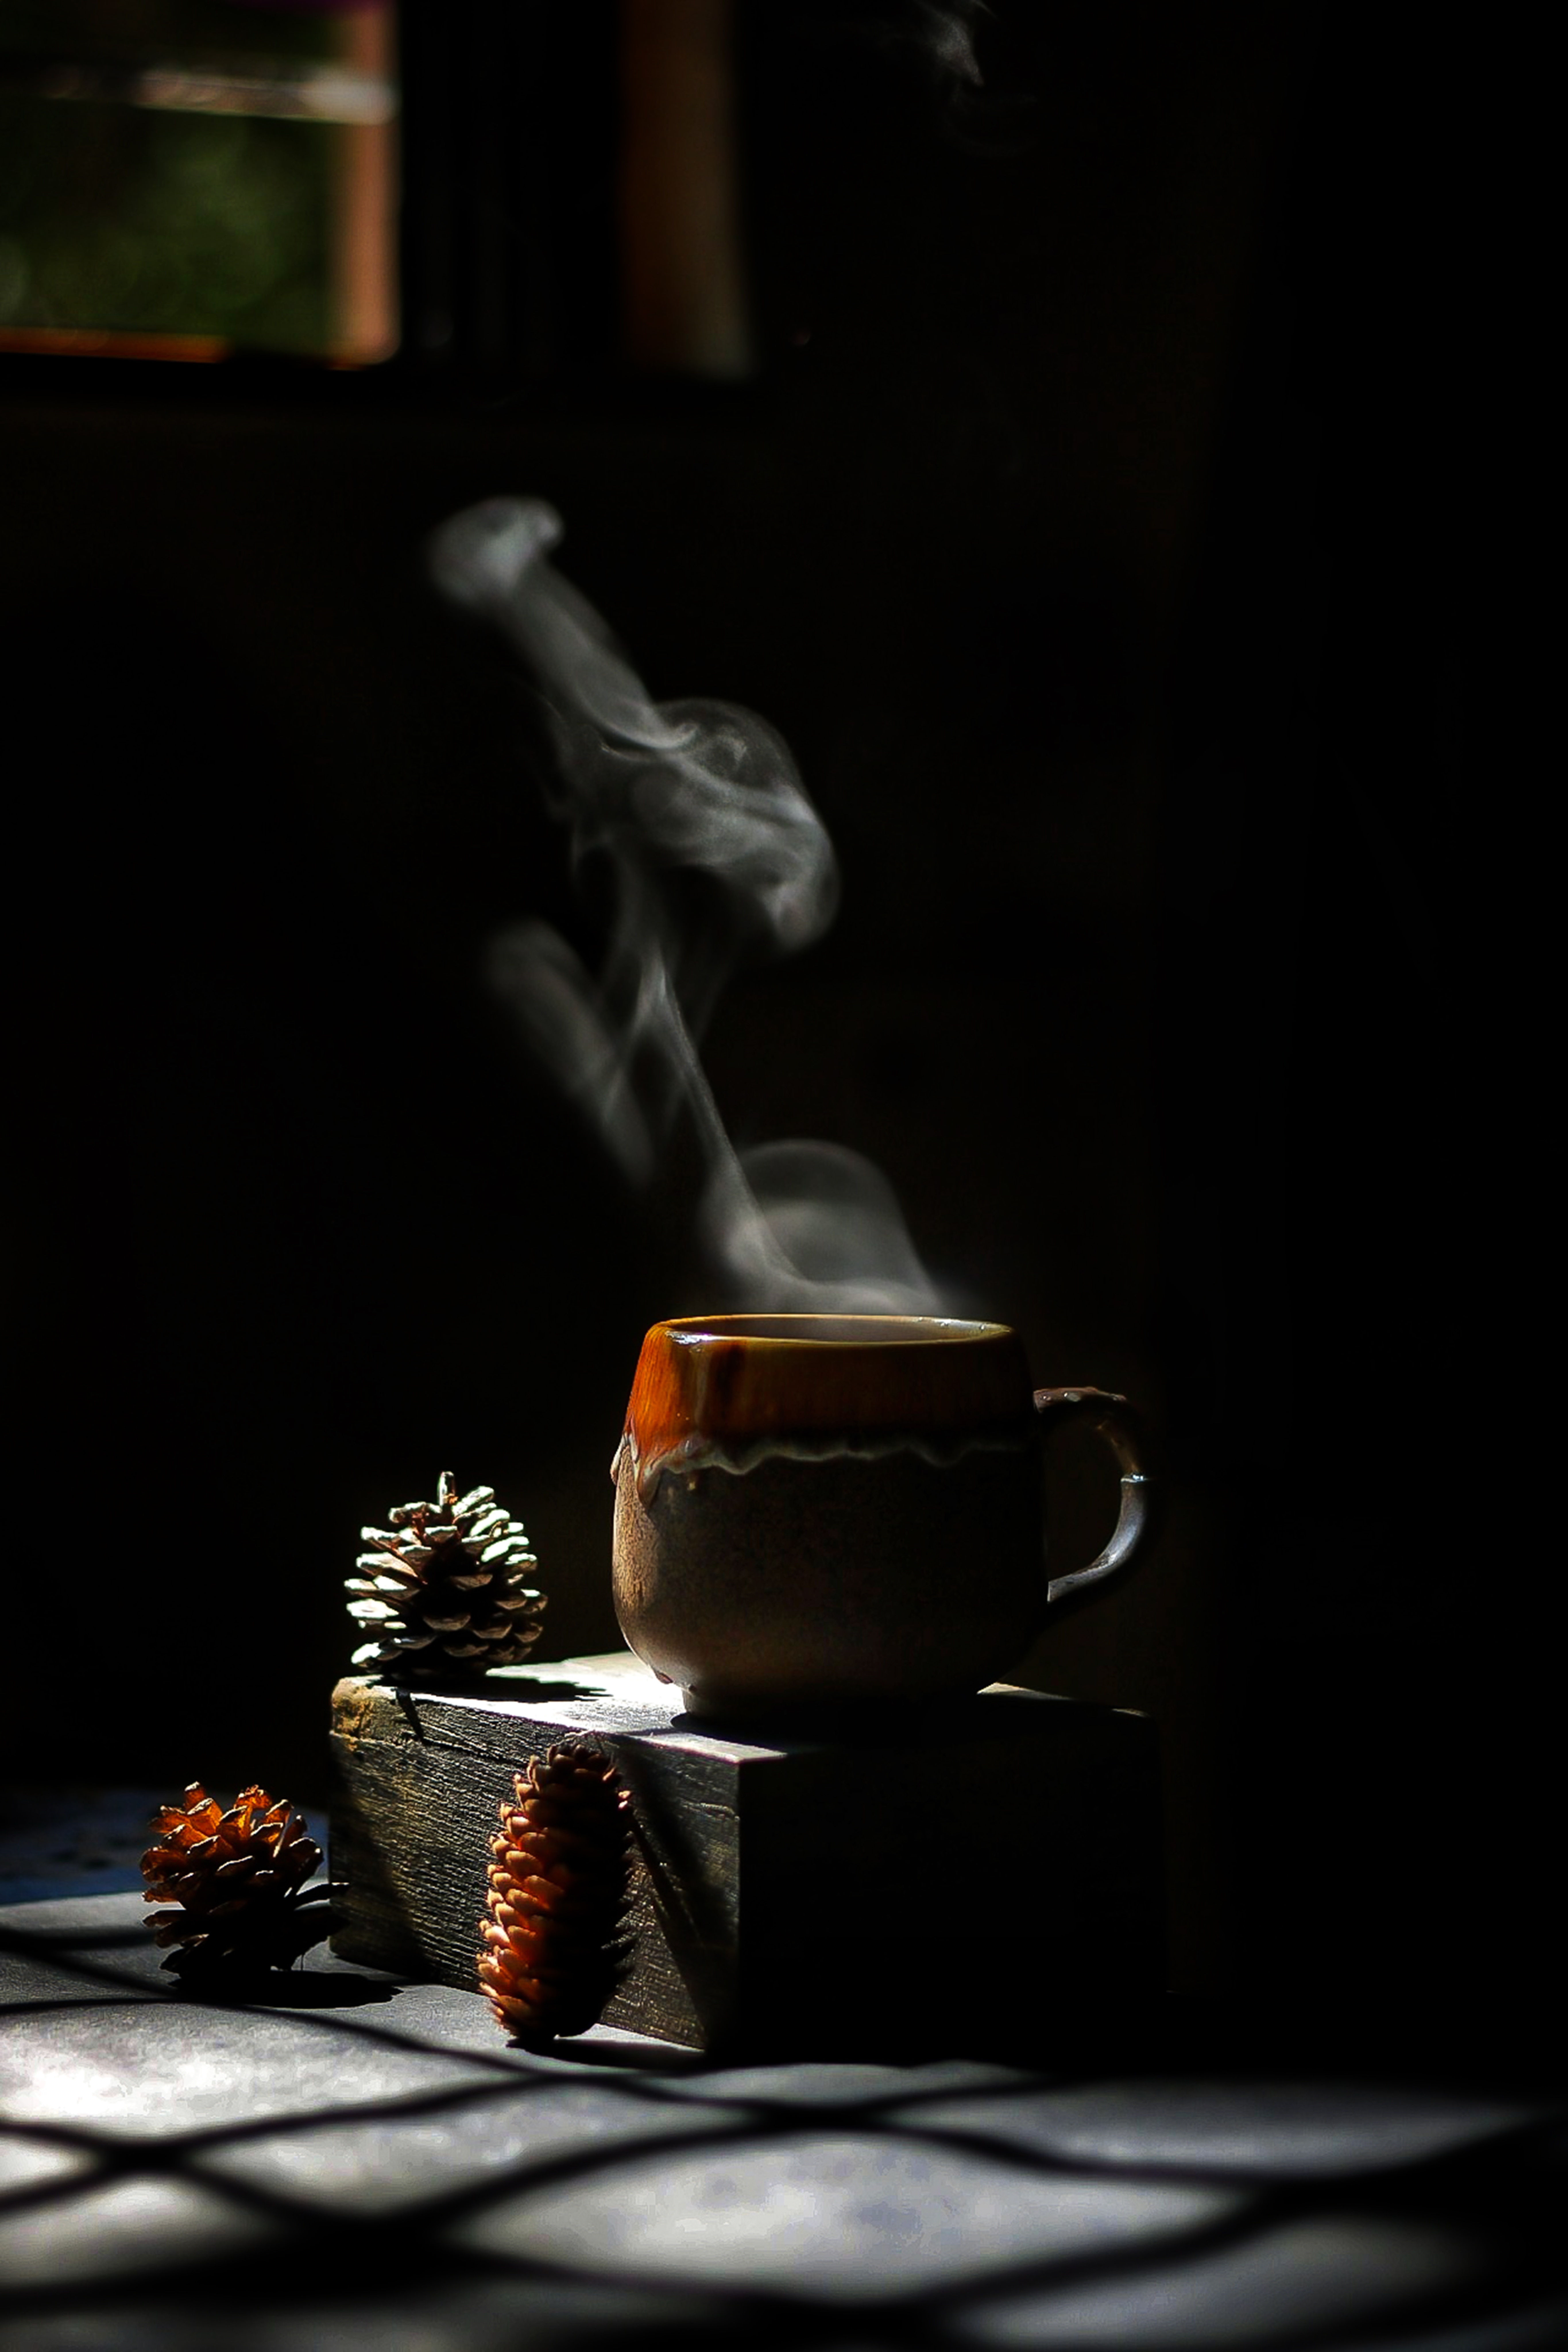 cup, cones, dark, drink, beverage, steam High Definition image